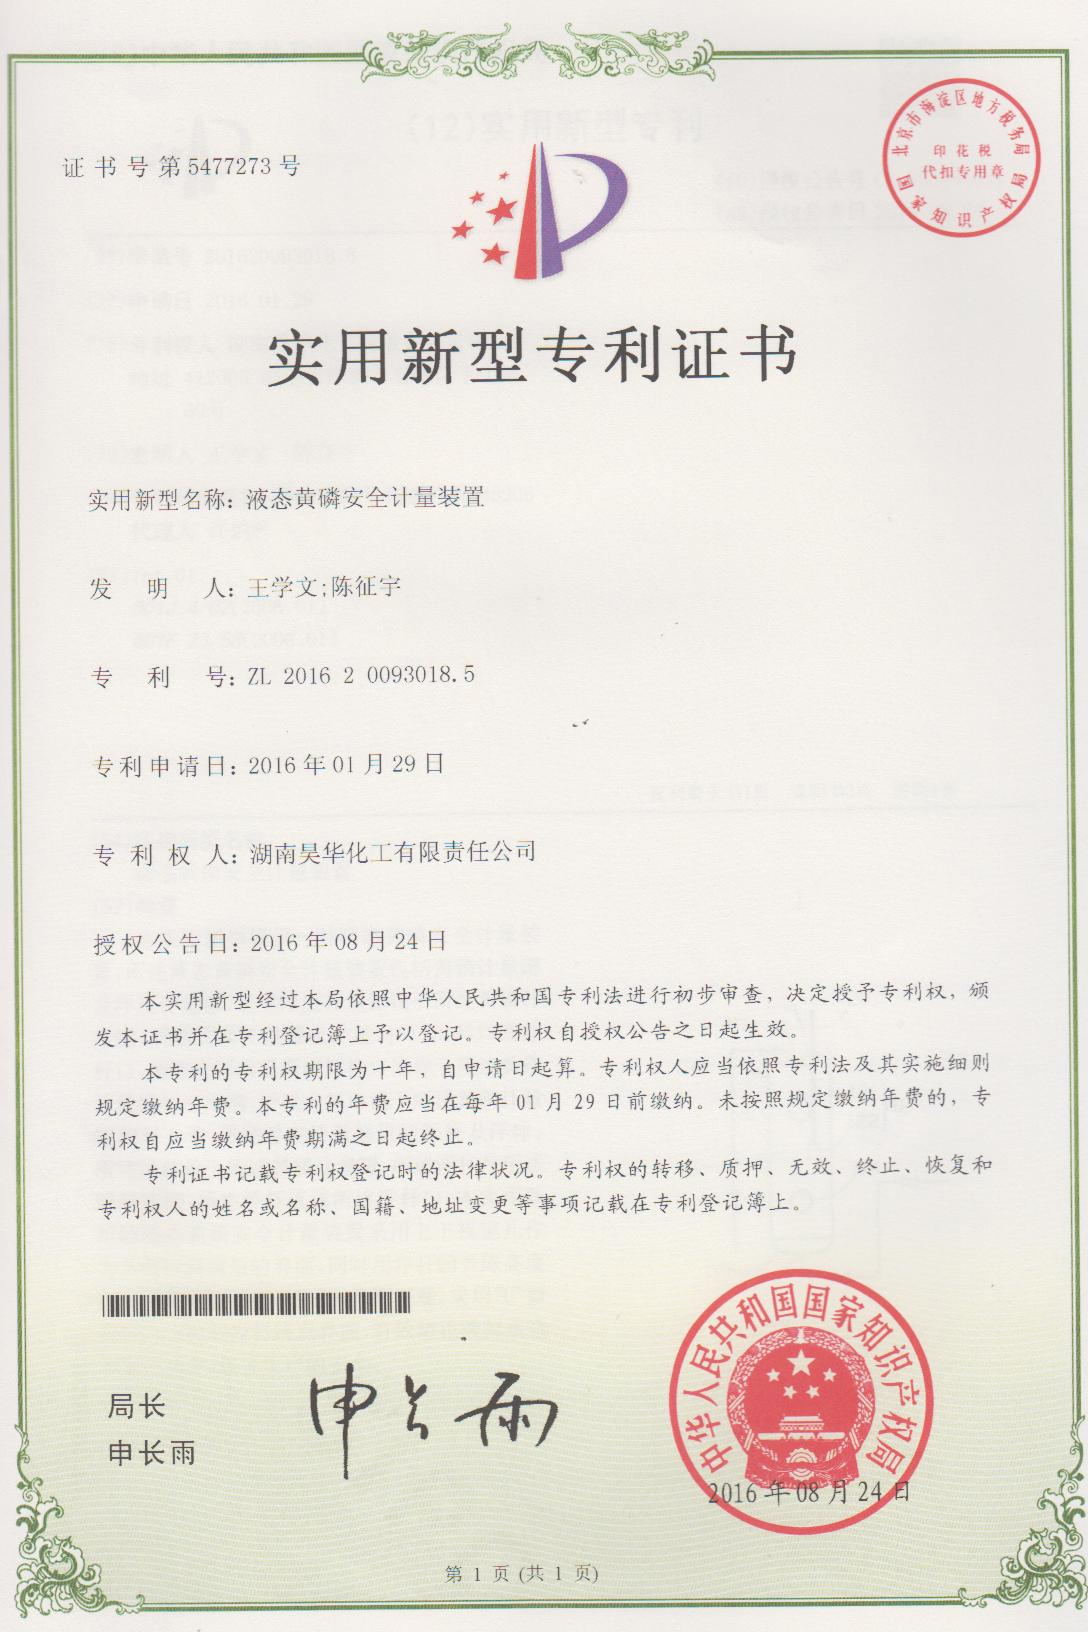 液態黃磷安全計量裝置專利證書